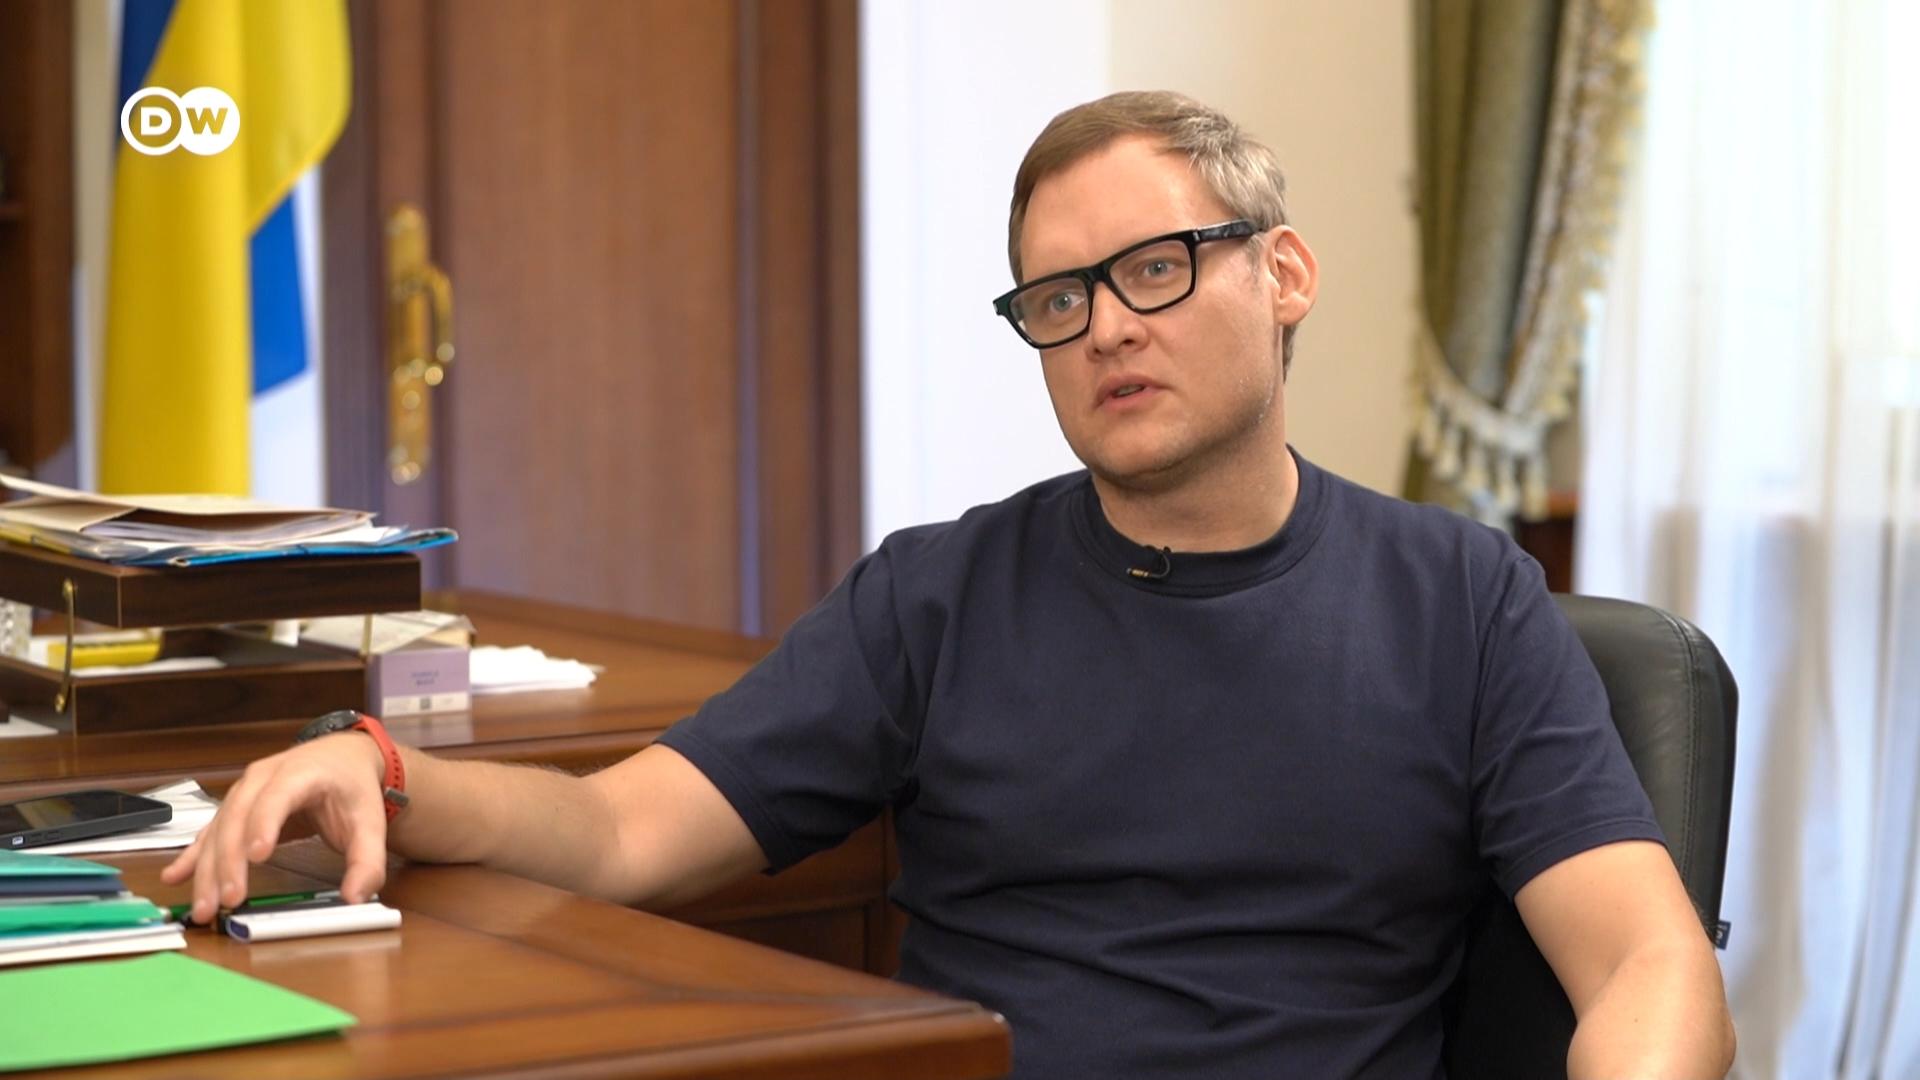 Заступник керівника Офісу президента, адвокат Андрій Смирнов про трибунал щодо Путіна і скандали довкола працівників ОП.